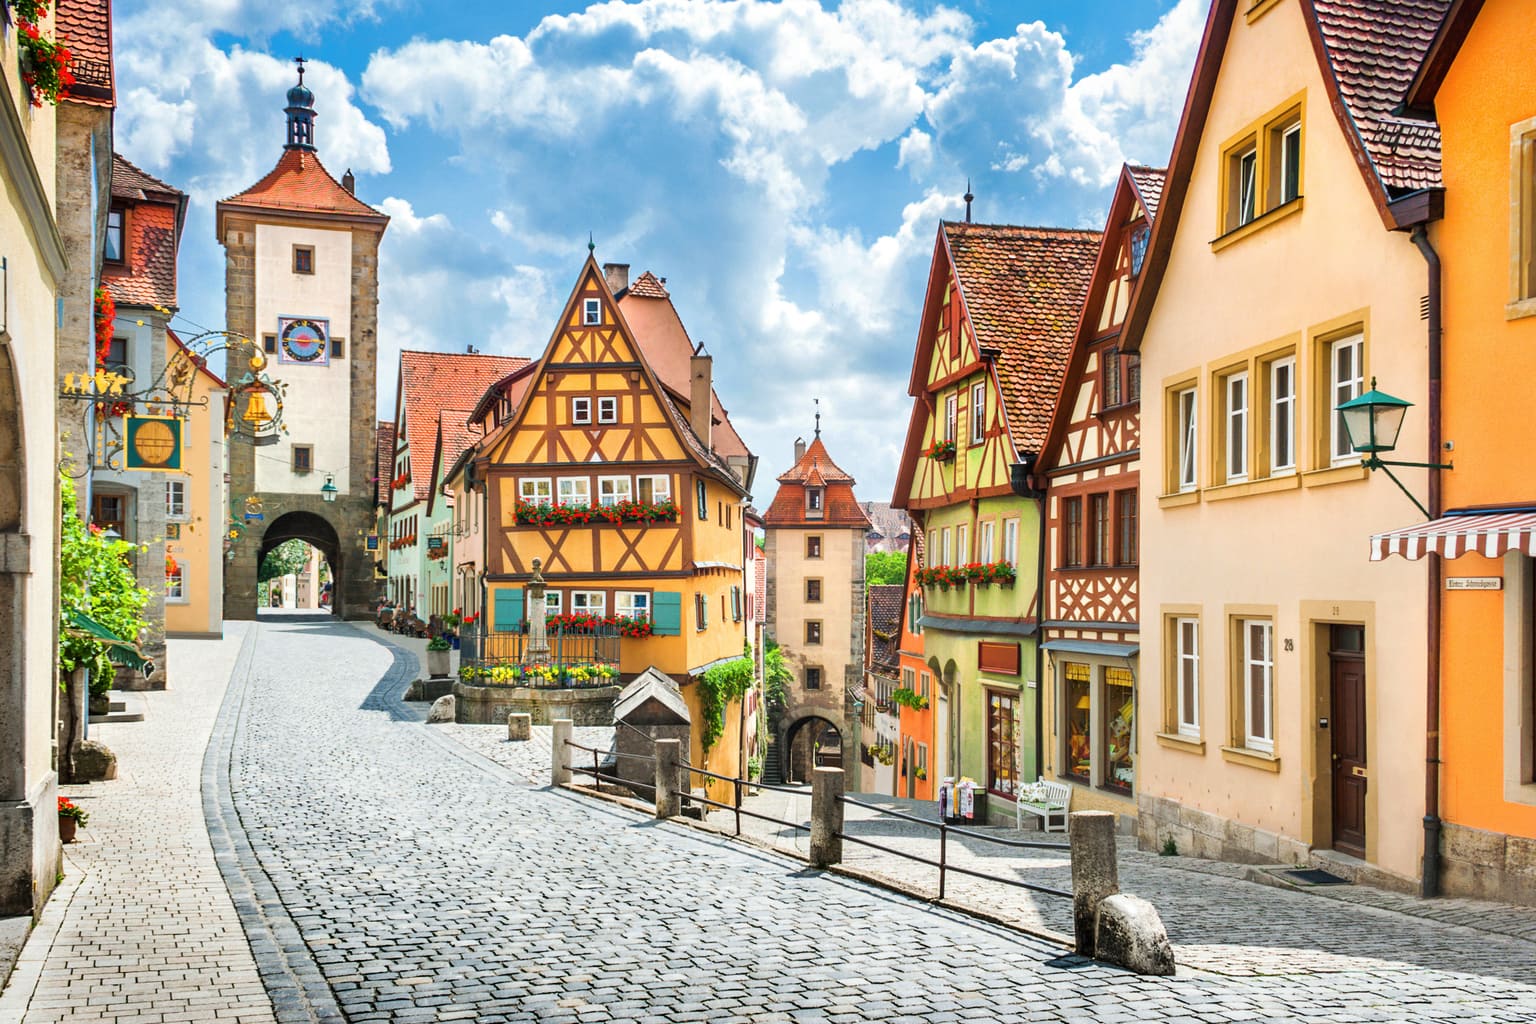 Rothenburg ob der Tauber is heel romantisch en met name daarom zijn plekken als het Ploenlein heel druk